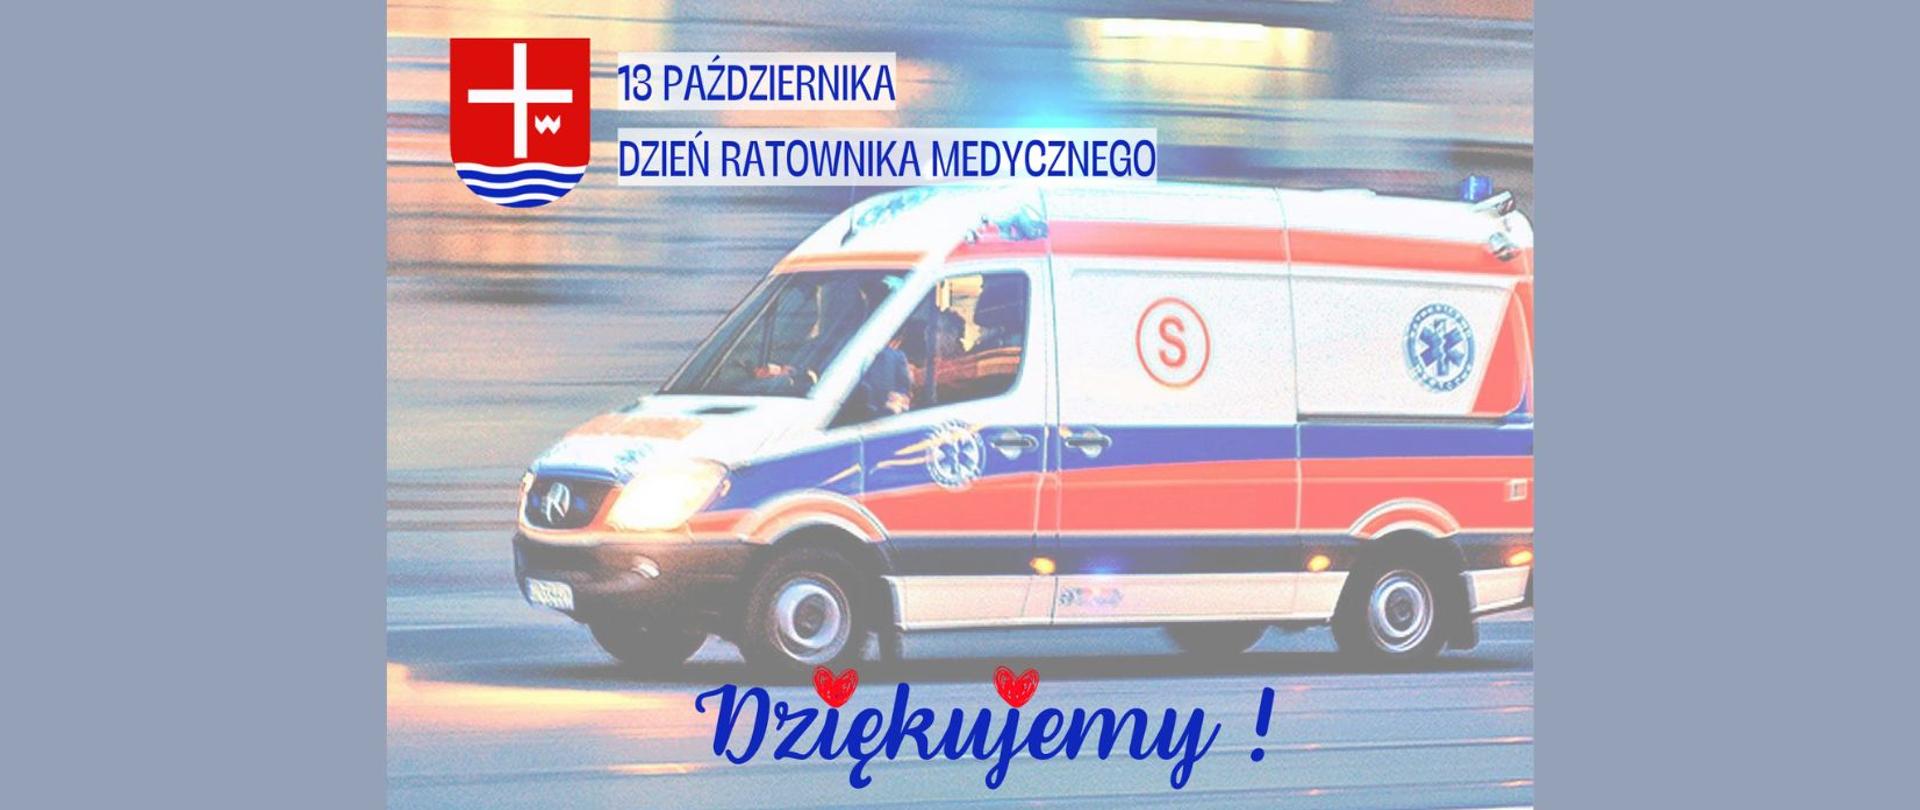 U góry herb powiatu lipskiego i napis 13 października Dzień Ratownika Medycznego, na dole - dziękujemy. W tle ambulans na sygnale.